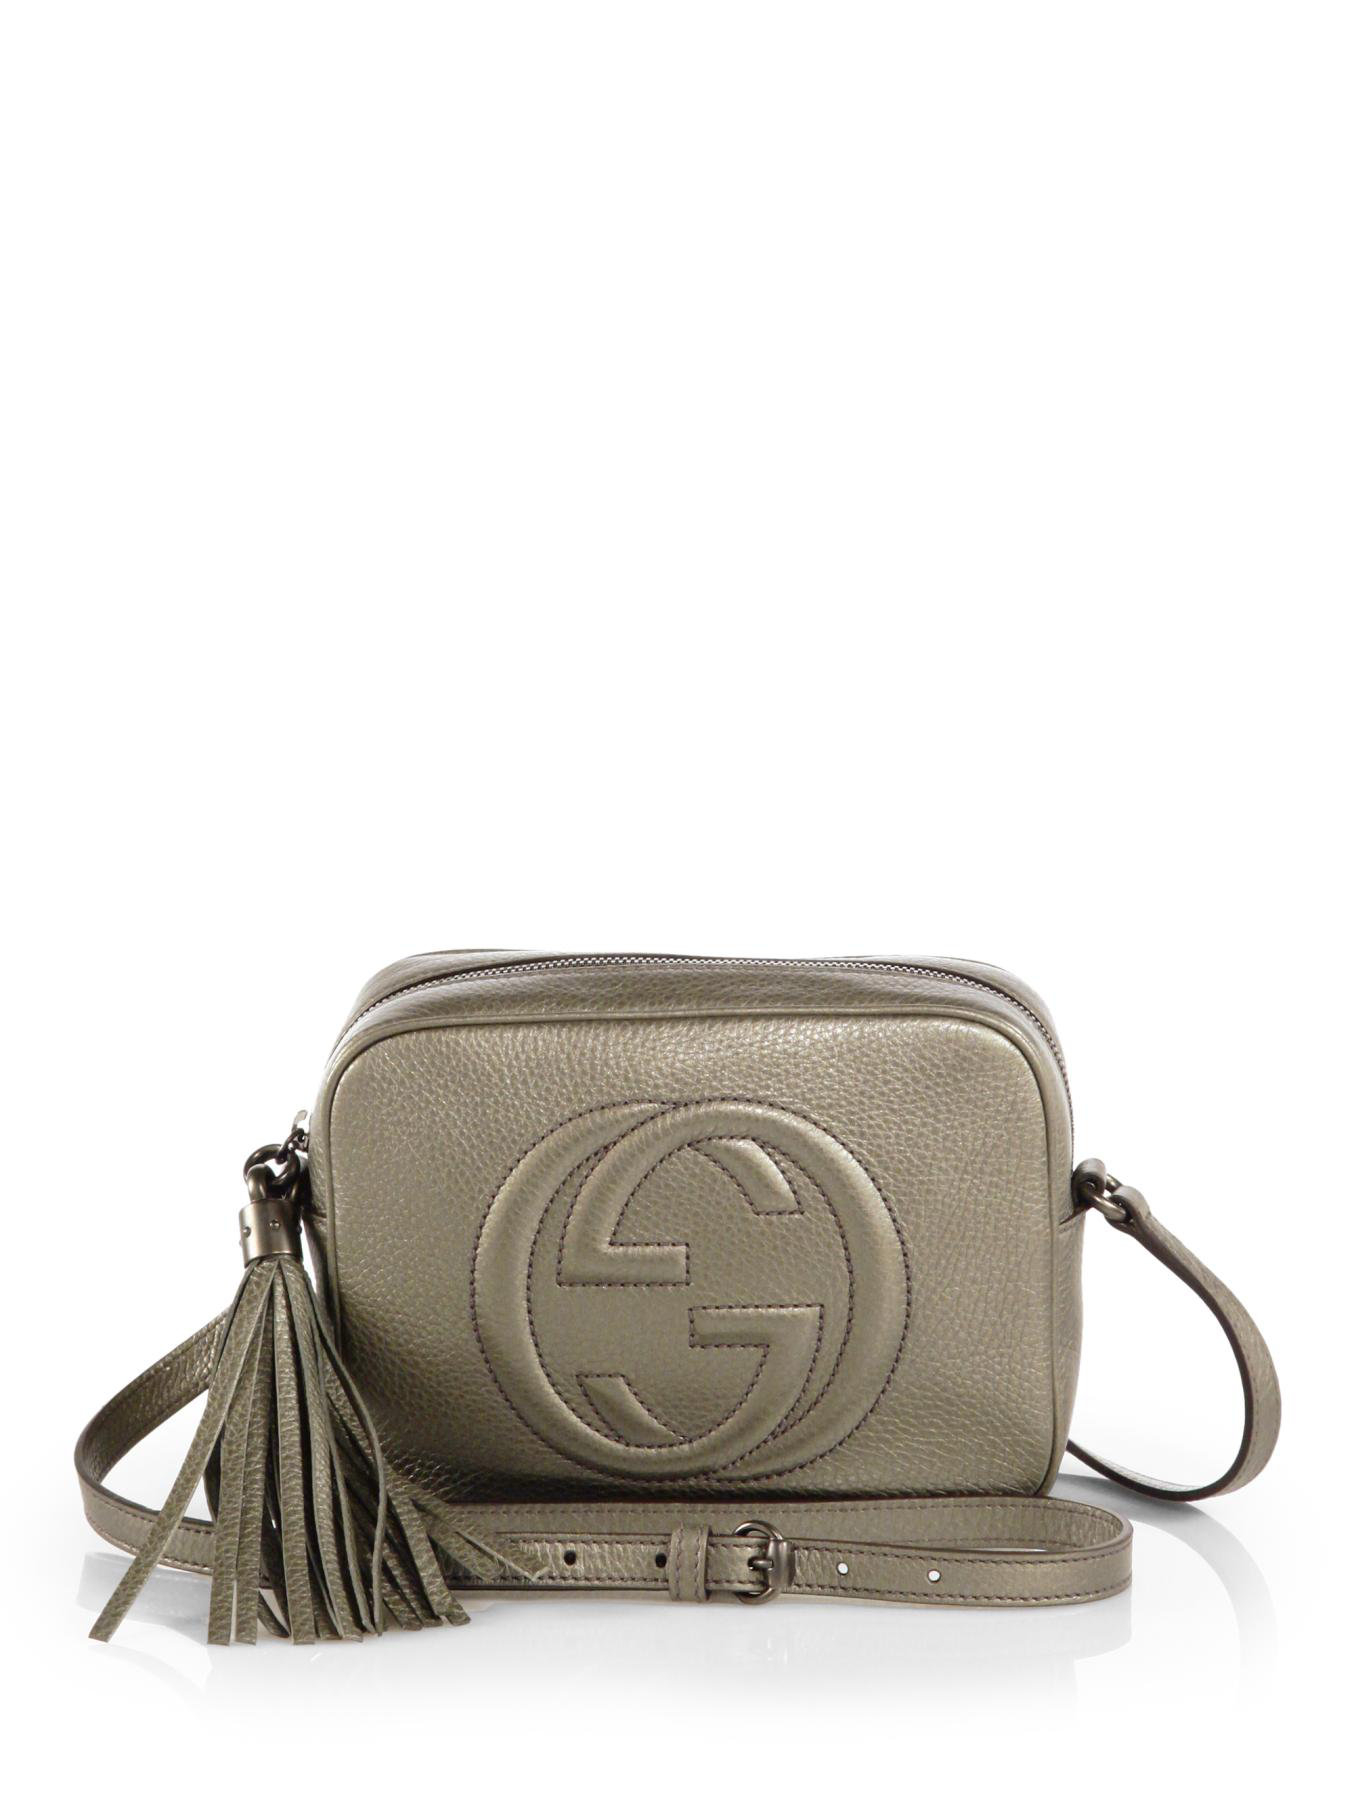 Lyst - Gucci Soho Metallic Leather Disco Bag in Metallic